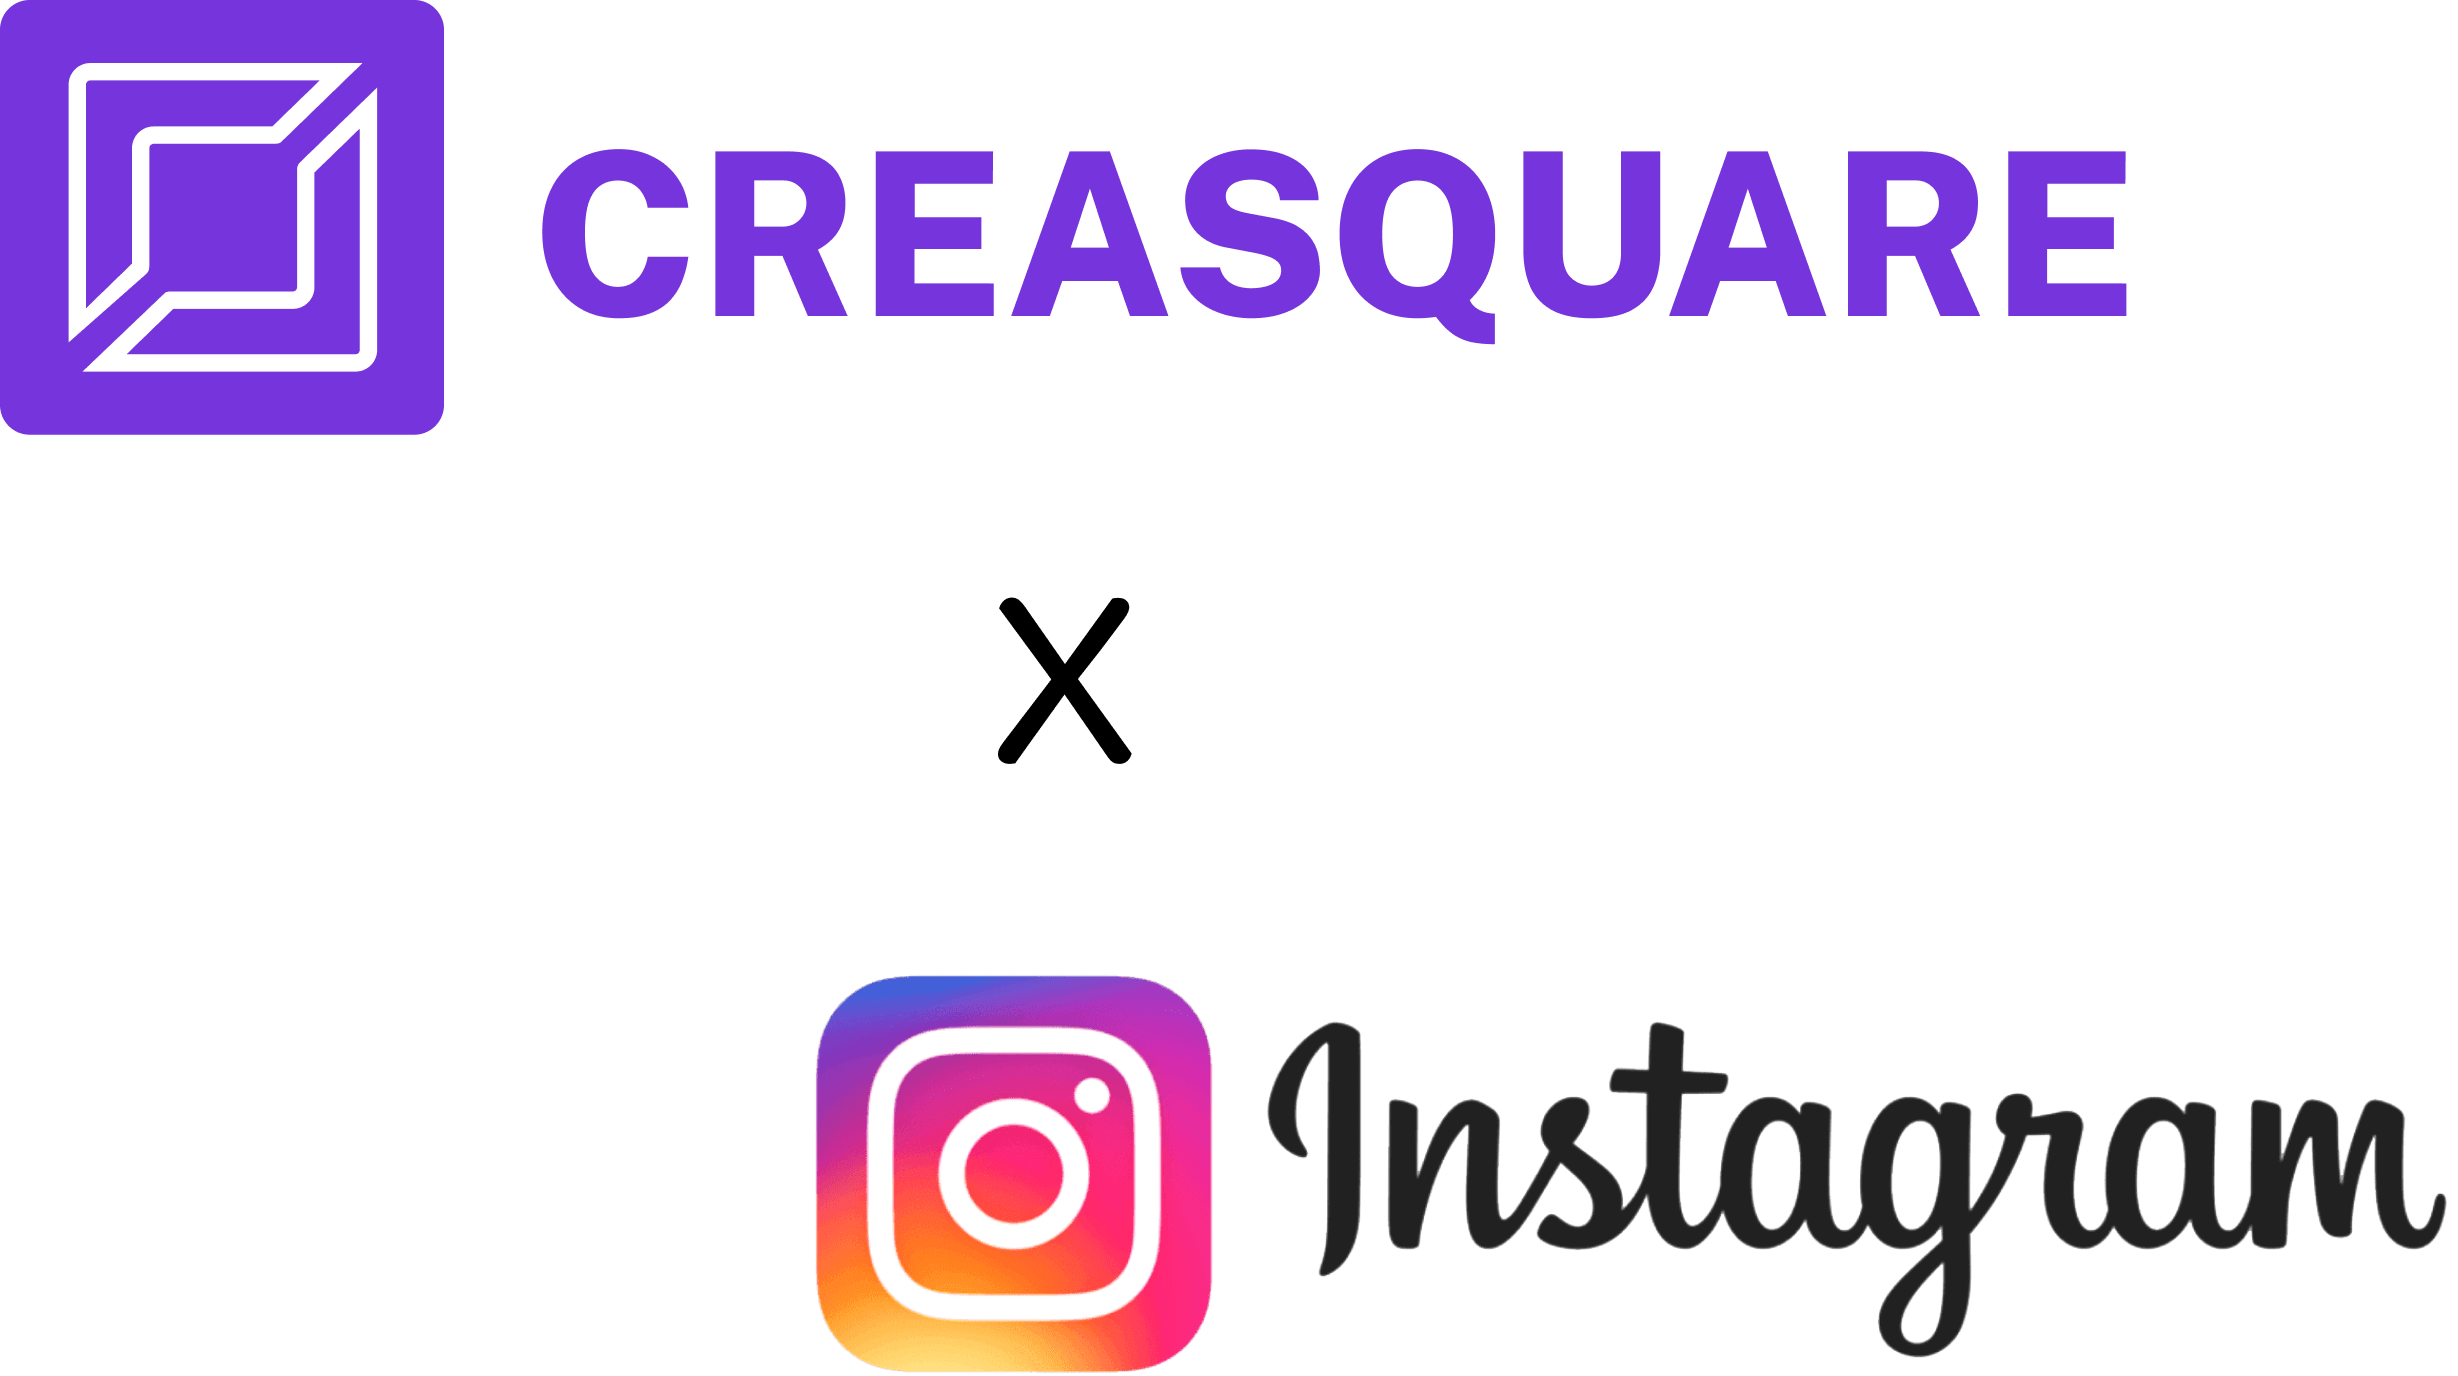 Instagram Creasquare logo